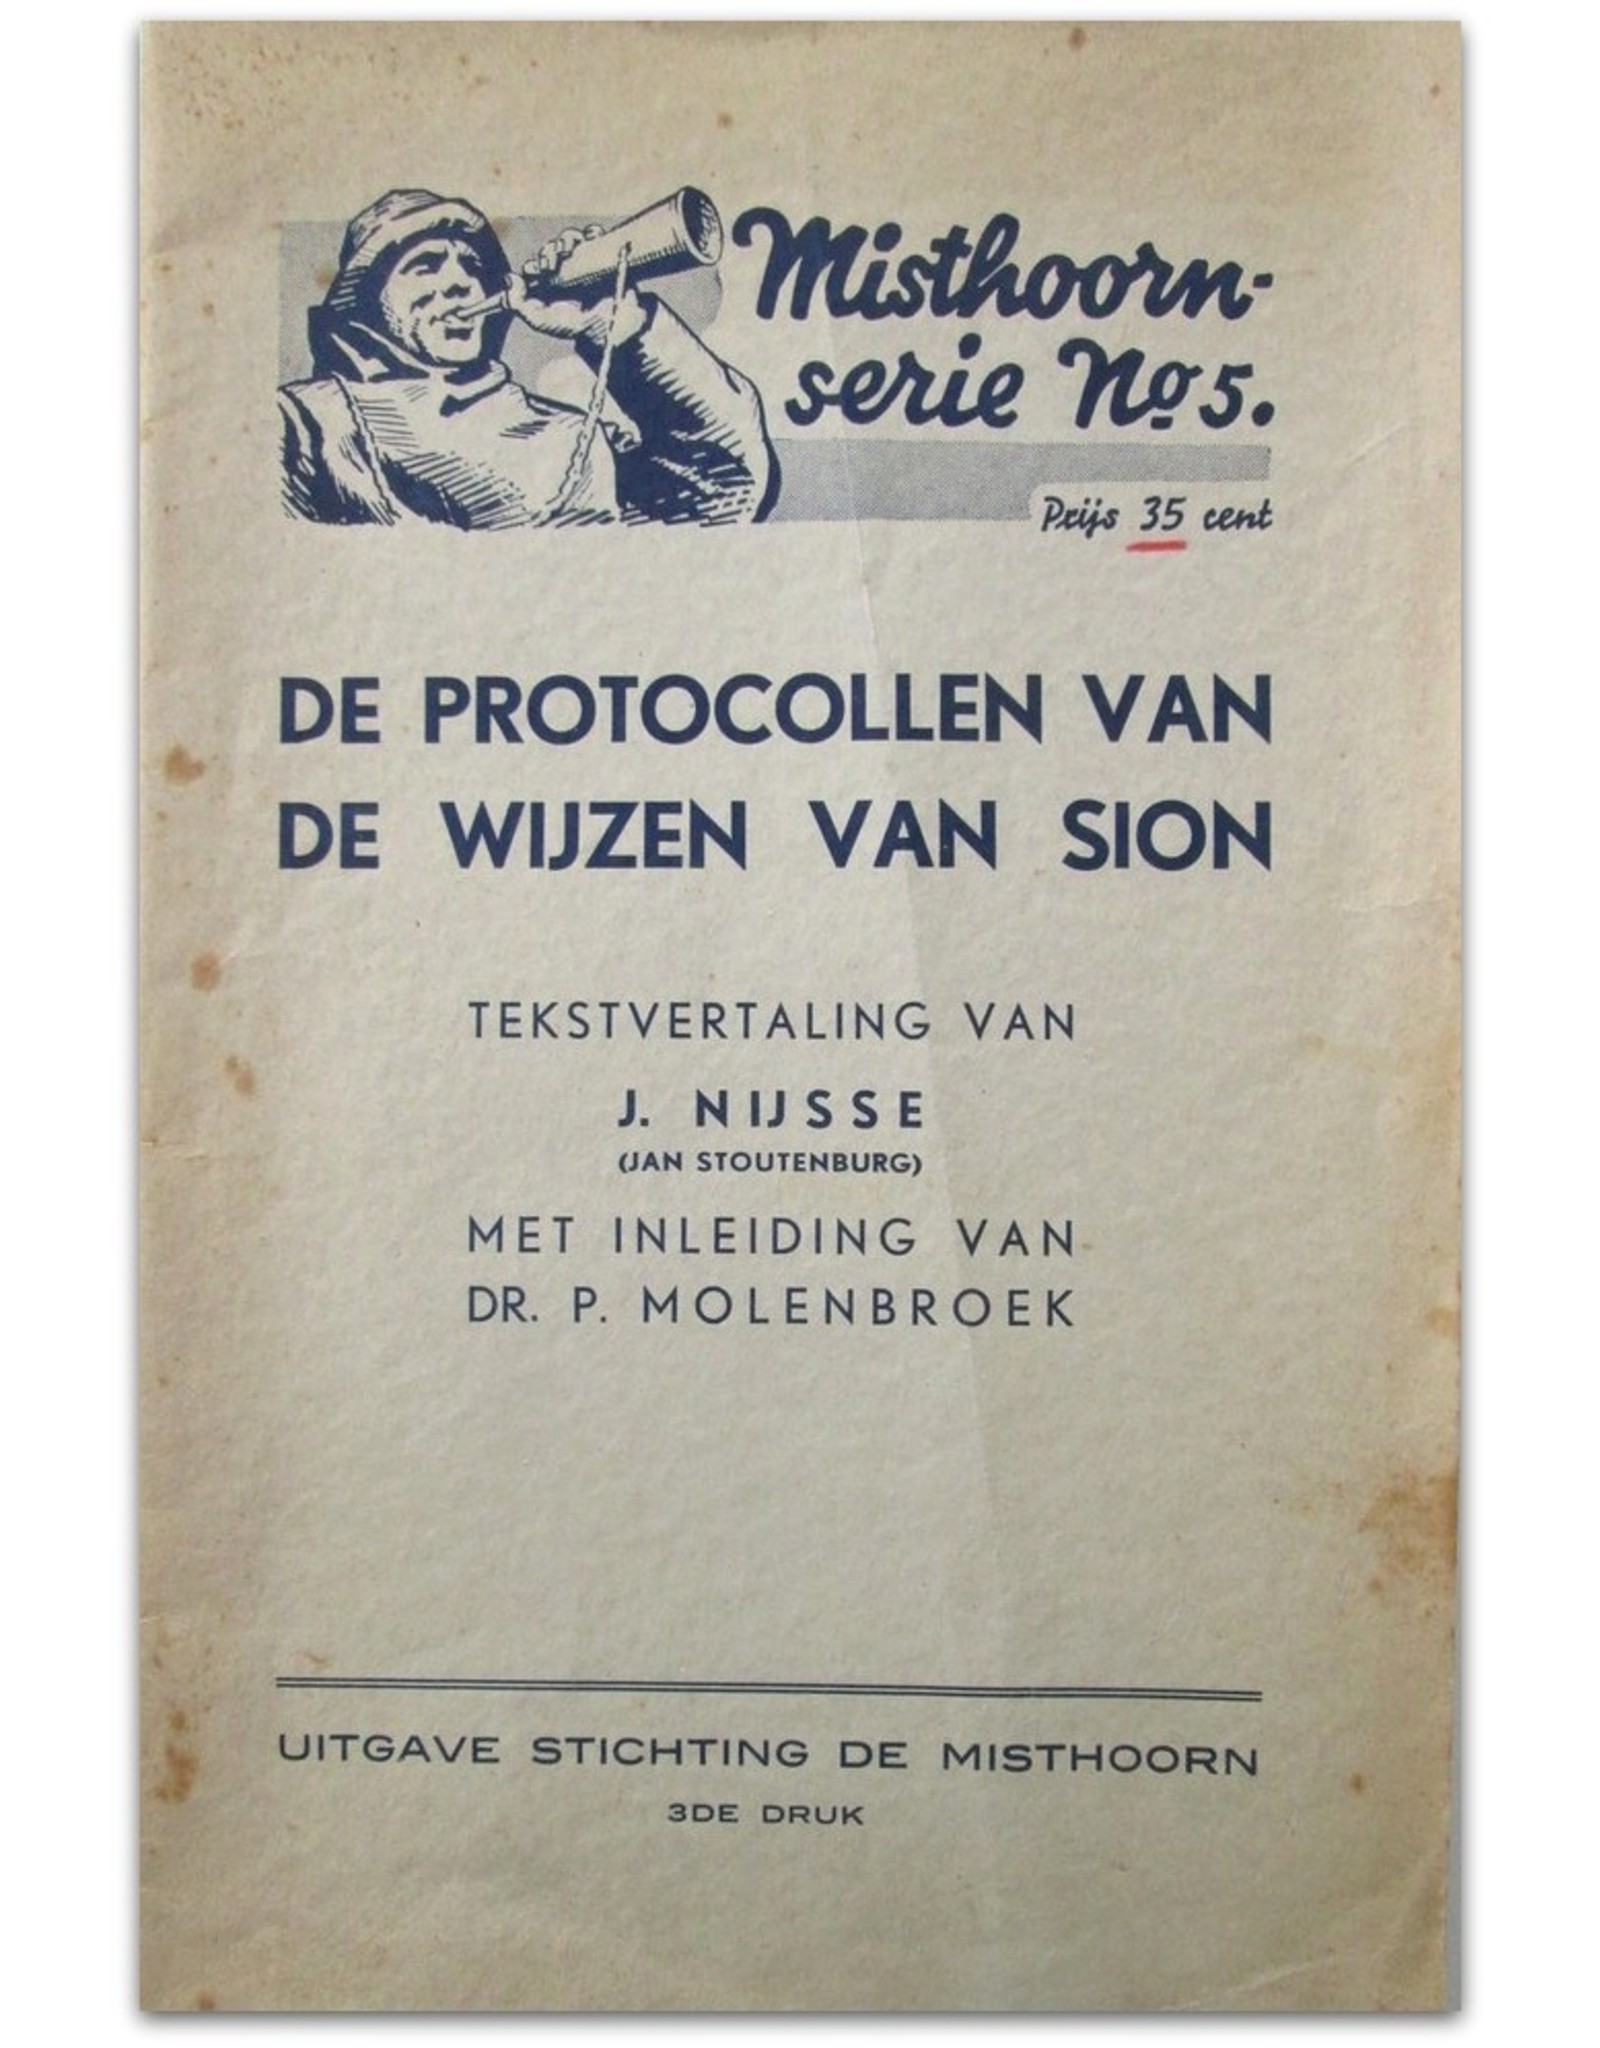 Misthoorn-serie No 5. De protocollen van de wijzen van Sion. Tekstvertaling  J. Nijsse (Jan Stoutenburg). Met inleiding van Dr. P. Molenbroek